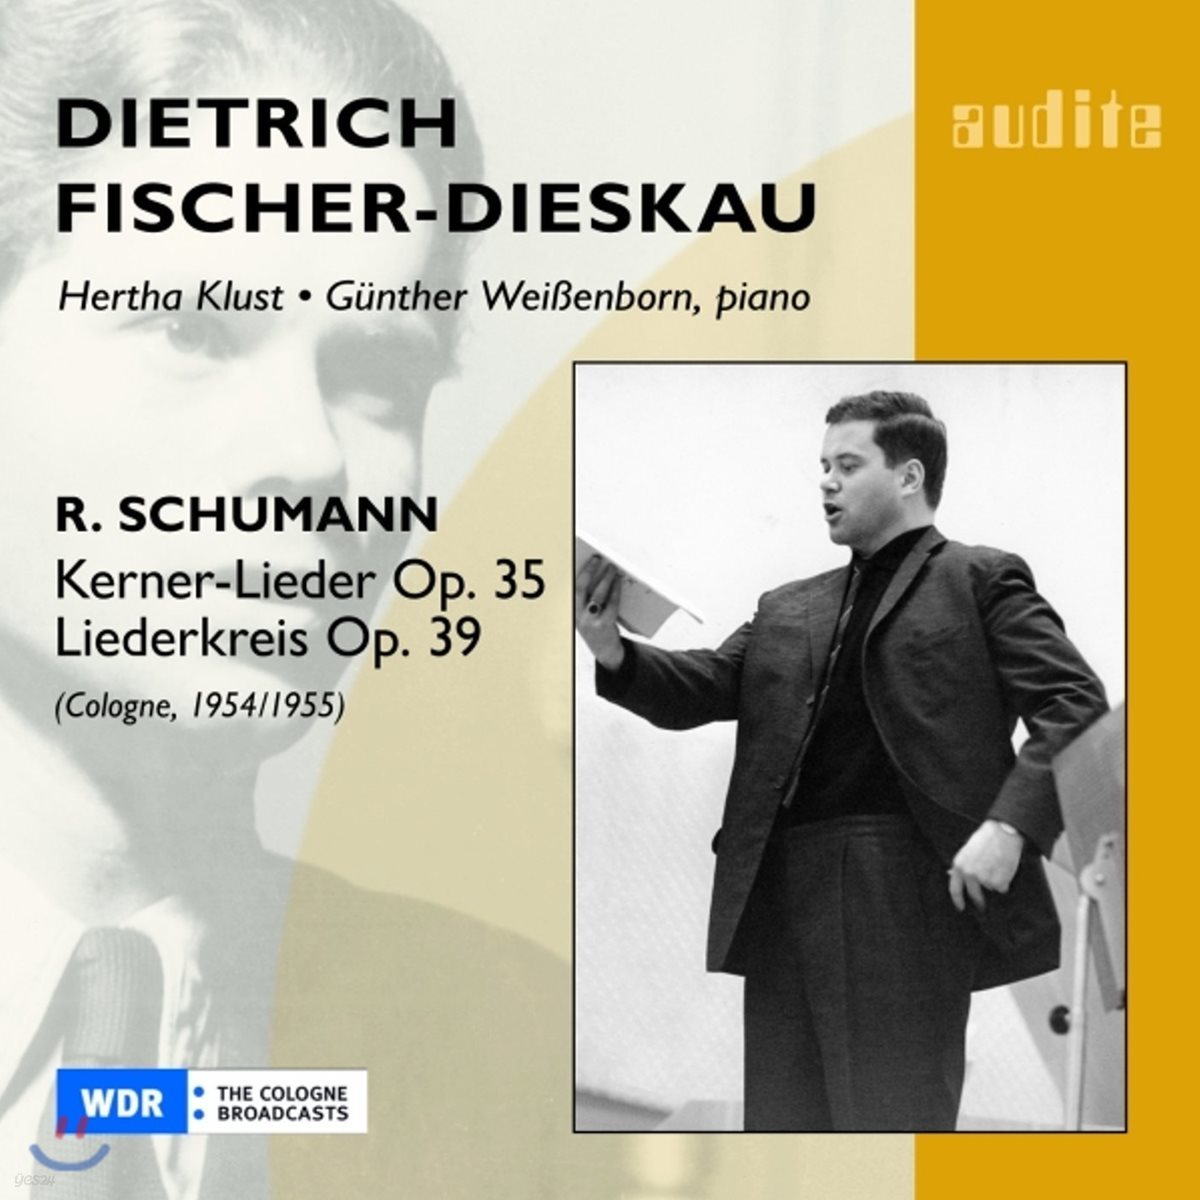 Dietrich Fischer-Dieskau 슈만: 리더크라이스, 케르너 가곡 (Schumann: Liederkreis Op.39, Kerner-Lieder Op.35)